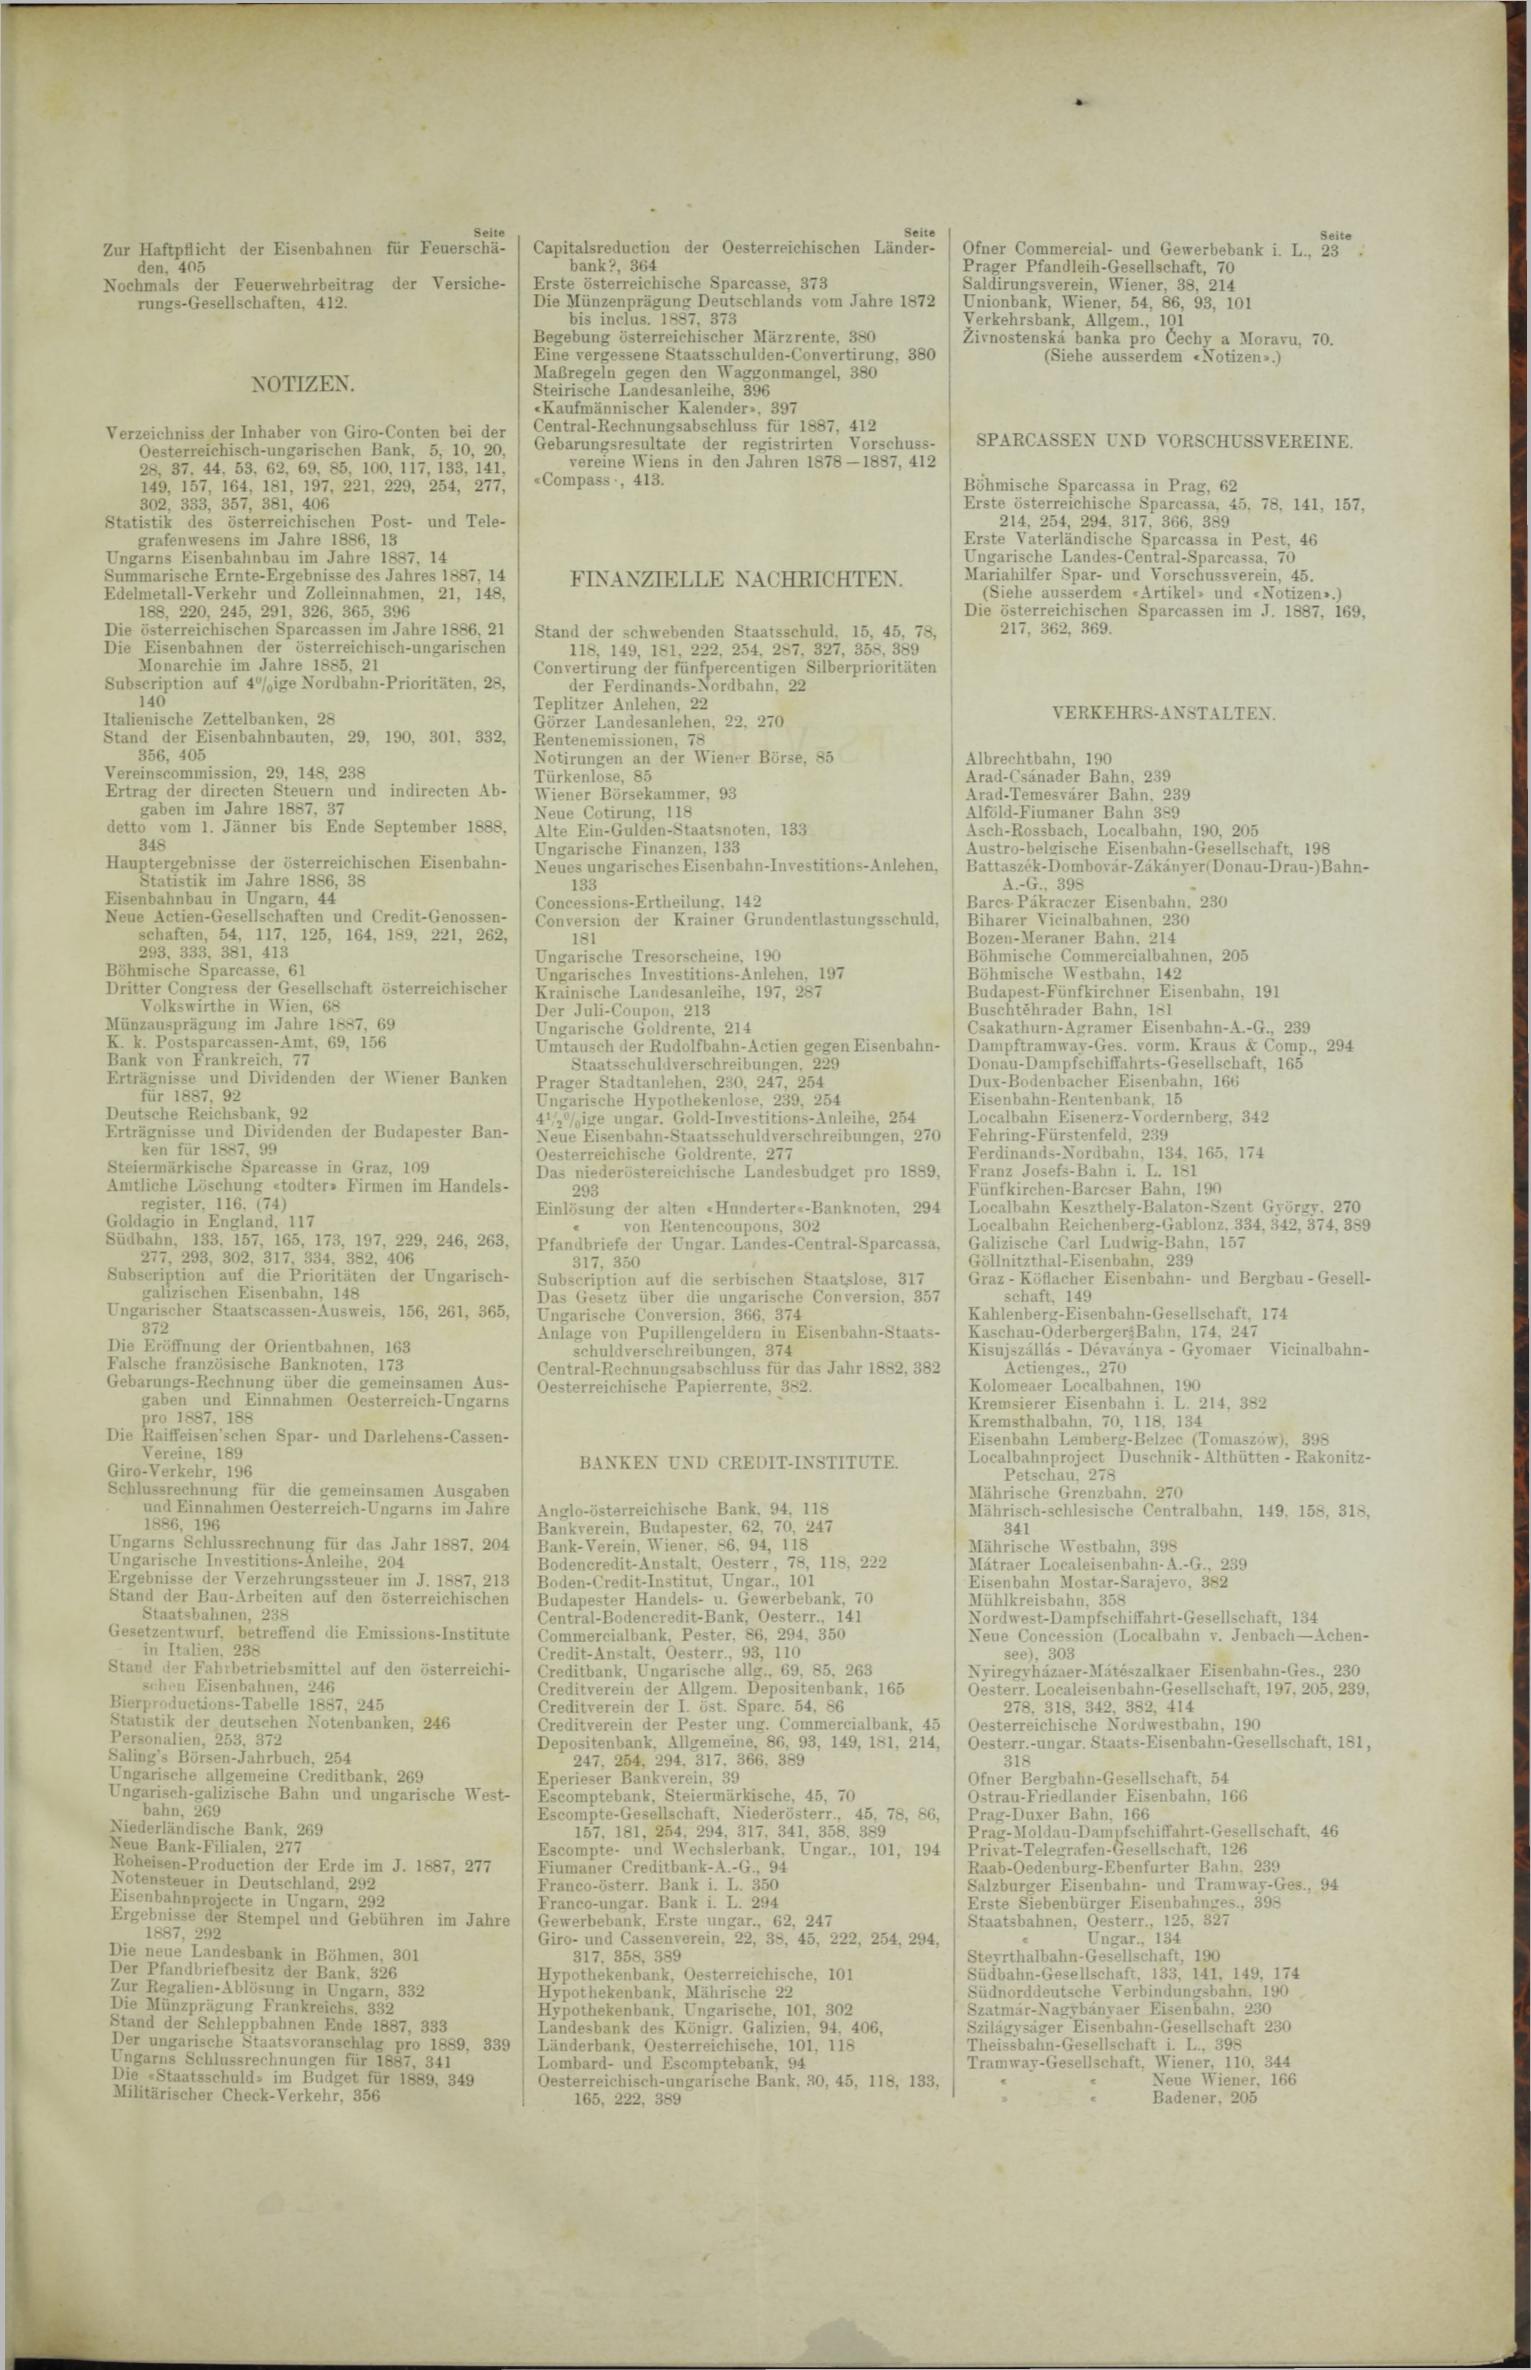 Der Tresor 21.06.1888 - Seite 11